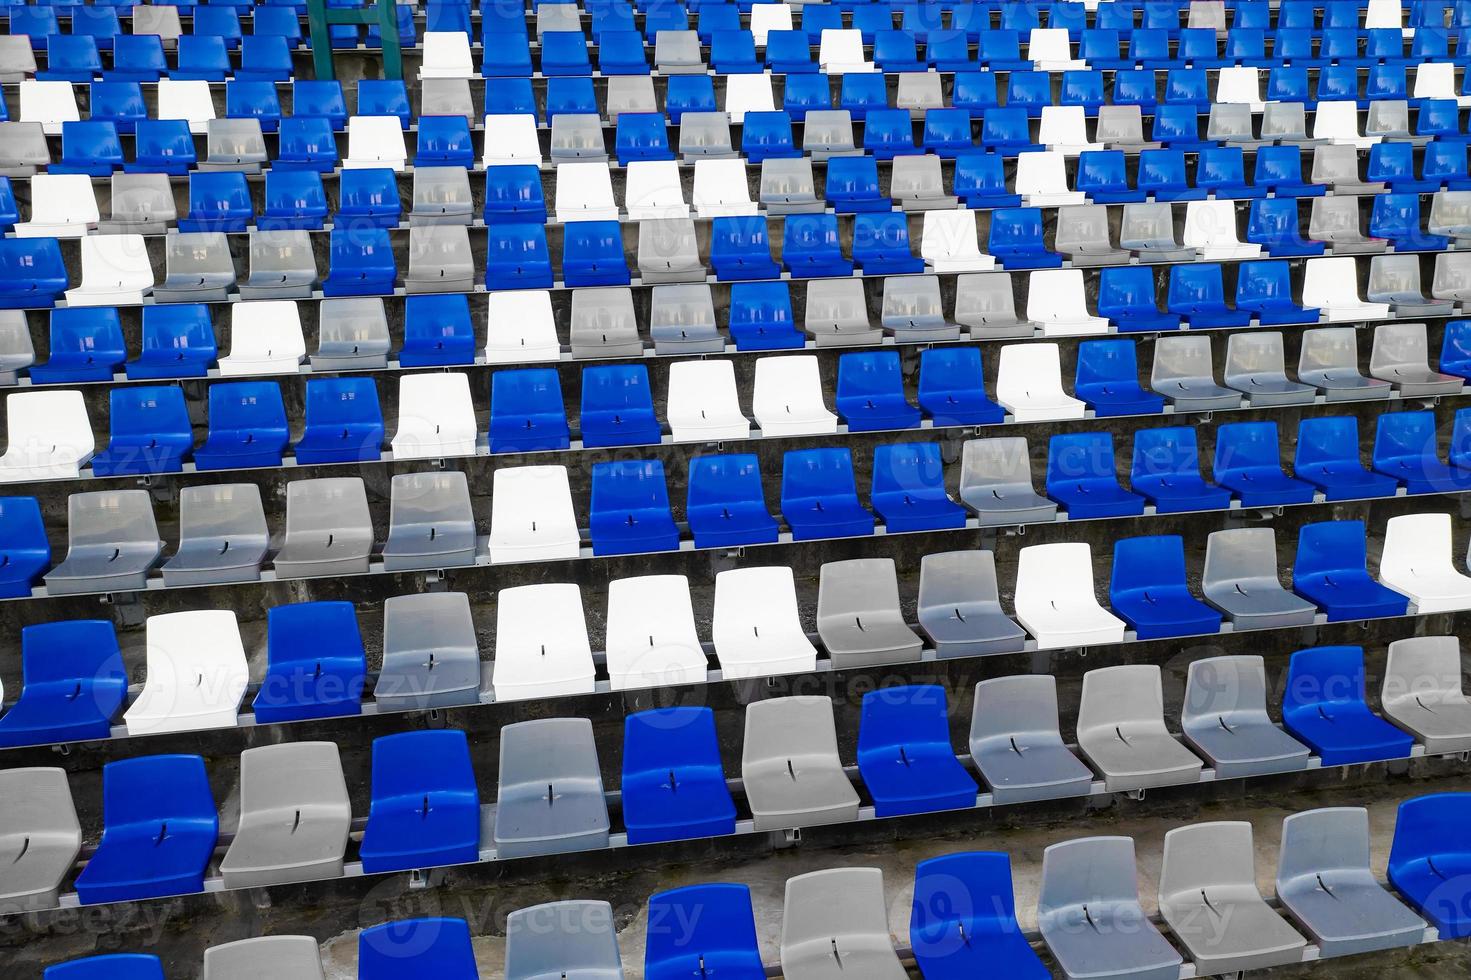 estadios anfiteatro asientos de plástico vacíos en el estadio. muchos asientos vacíos para los espectadores en las gradas para los fanáticos del fútbol y otros deportes al aire libre. un lugar público que el gobierno crea para el público. foto